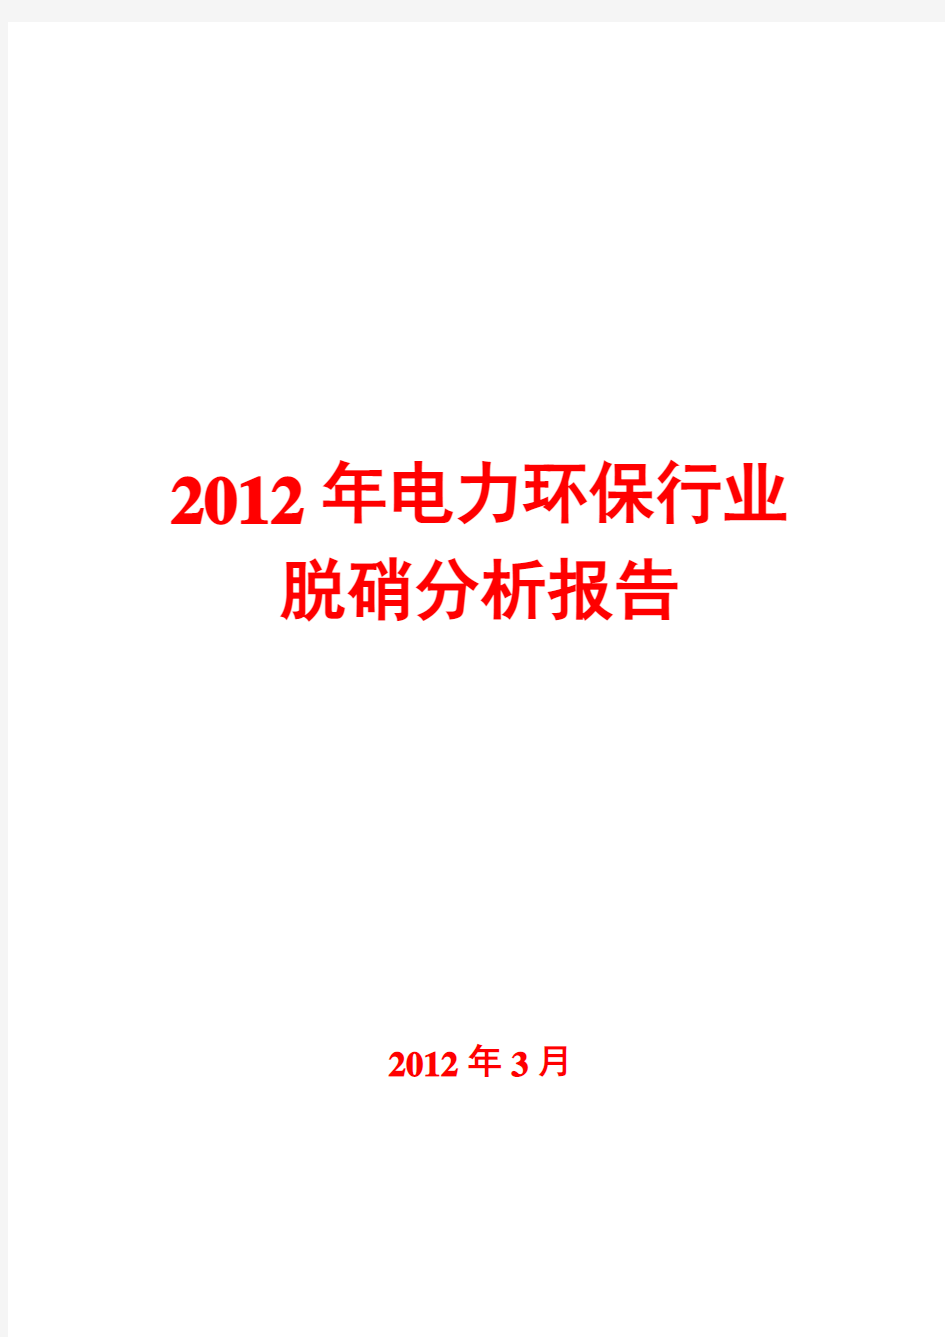 2012年电力环保行业脱硝分析报告